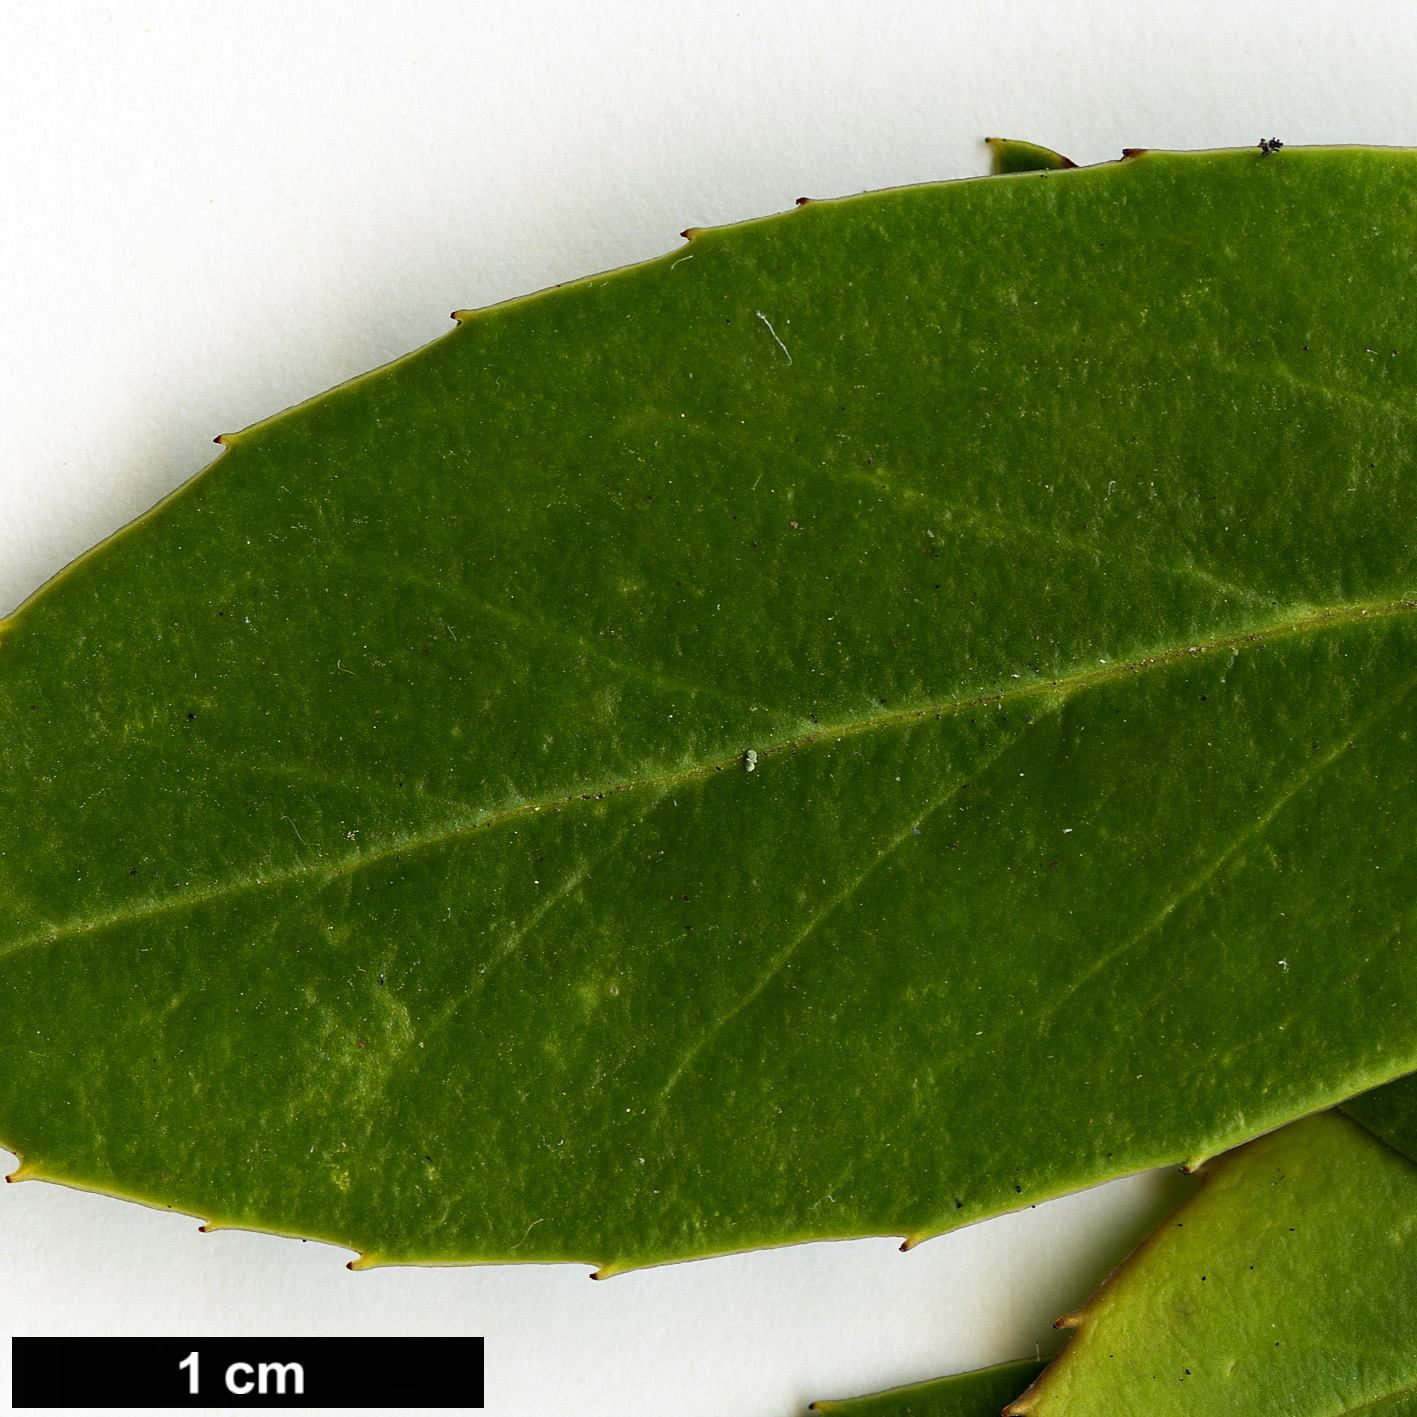 High resolution image: Family: Aquifoliaceae - Genus: Ilex - Taxon: fargesii - SpeciesSub: subsp. fargesii var. brevifolia